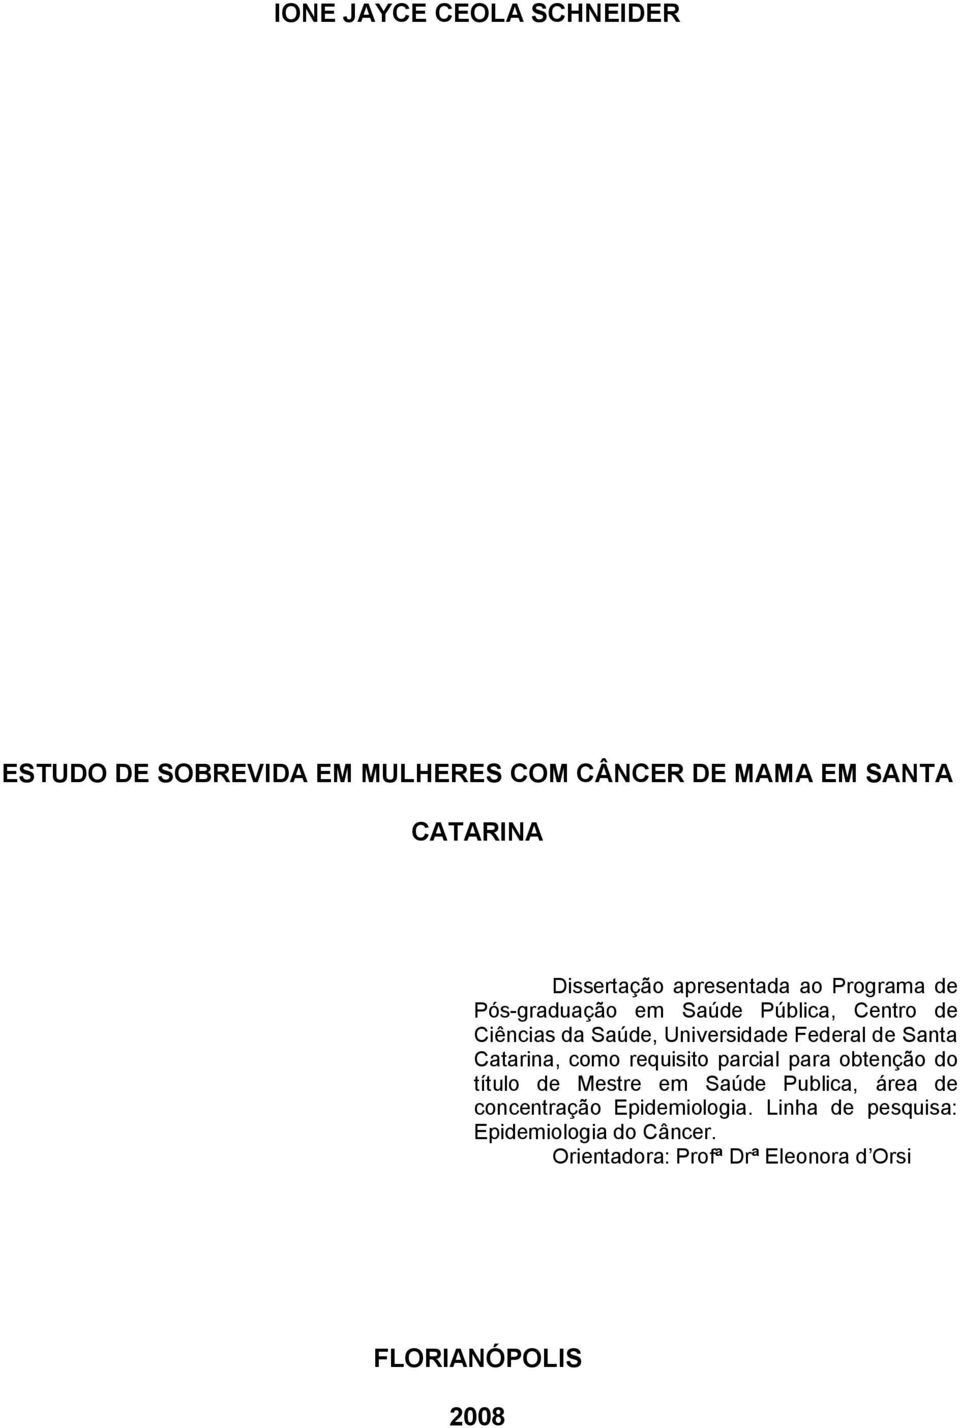 Santa Catarina, como requisito parcial para obtenção do título de Mestre em Saúde Publica, área de concentração